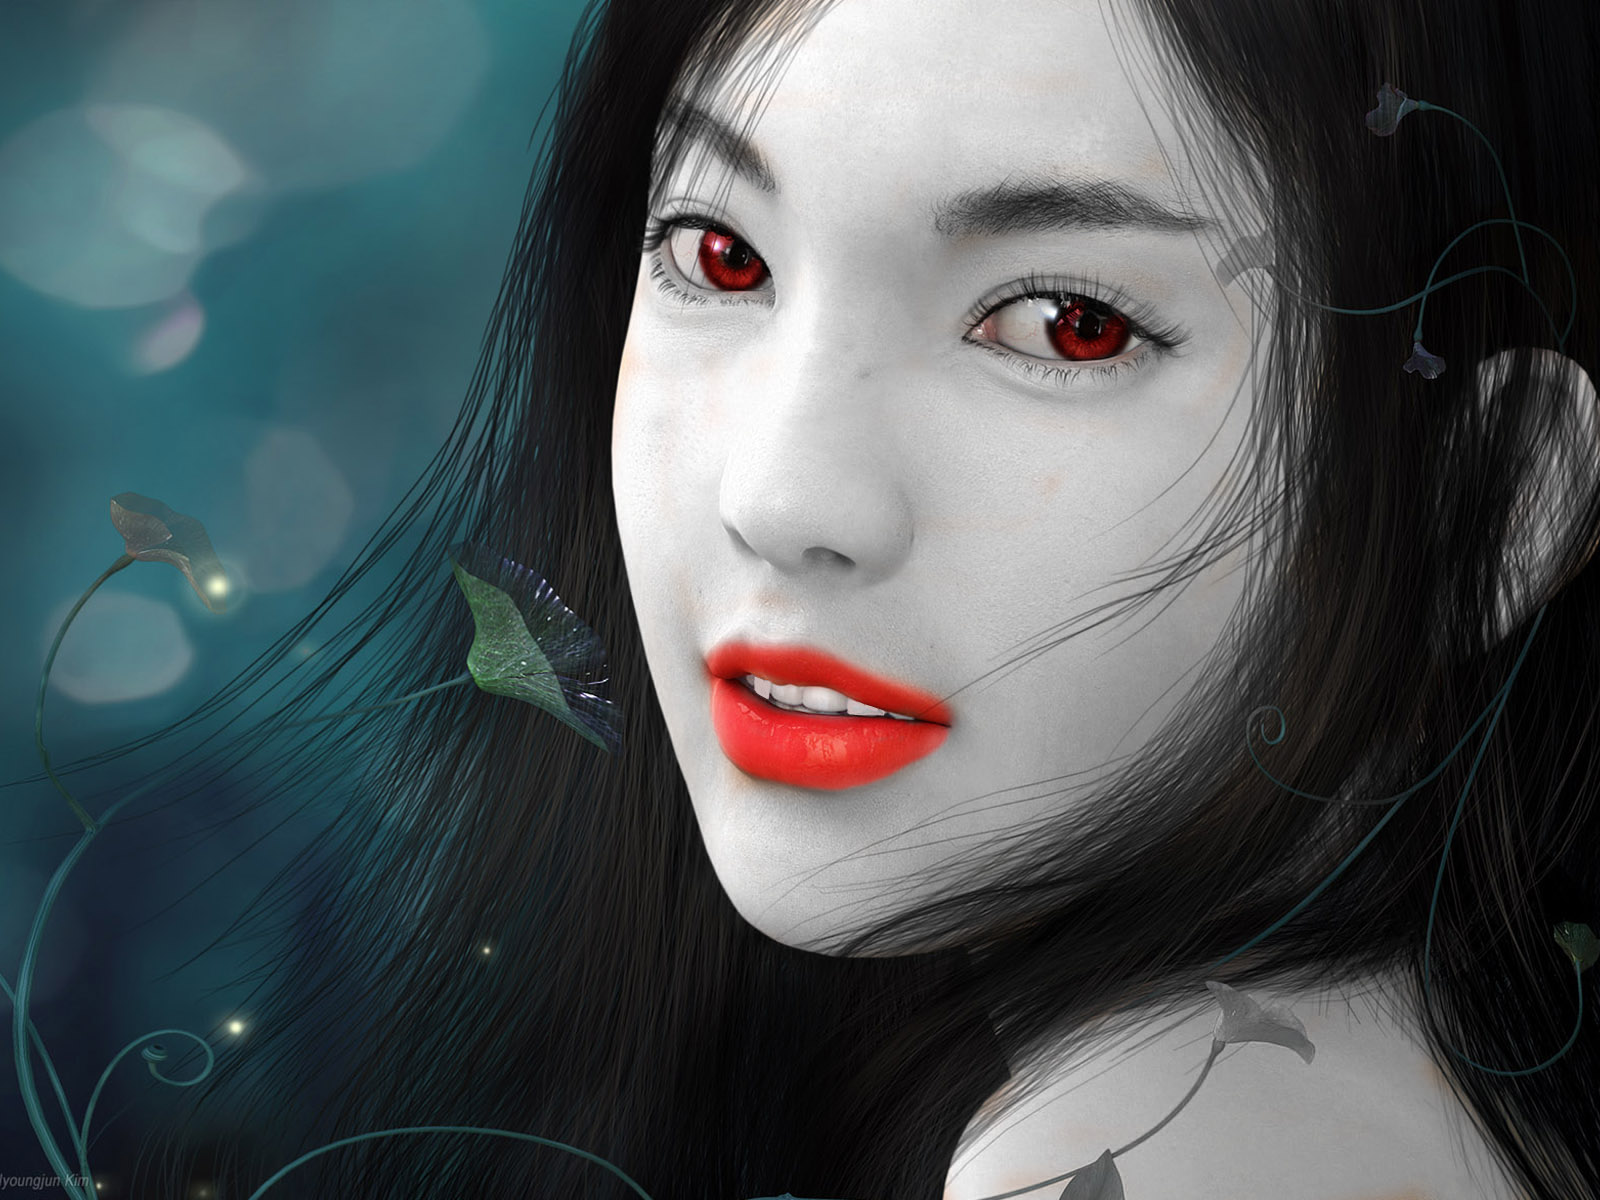 Vampire Girl by WhysAllTheNamesTaken on DeviantArt